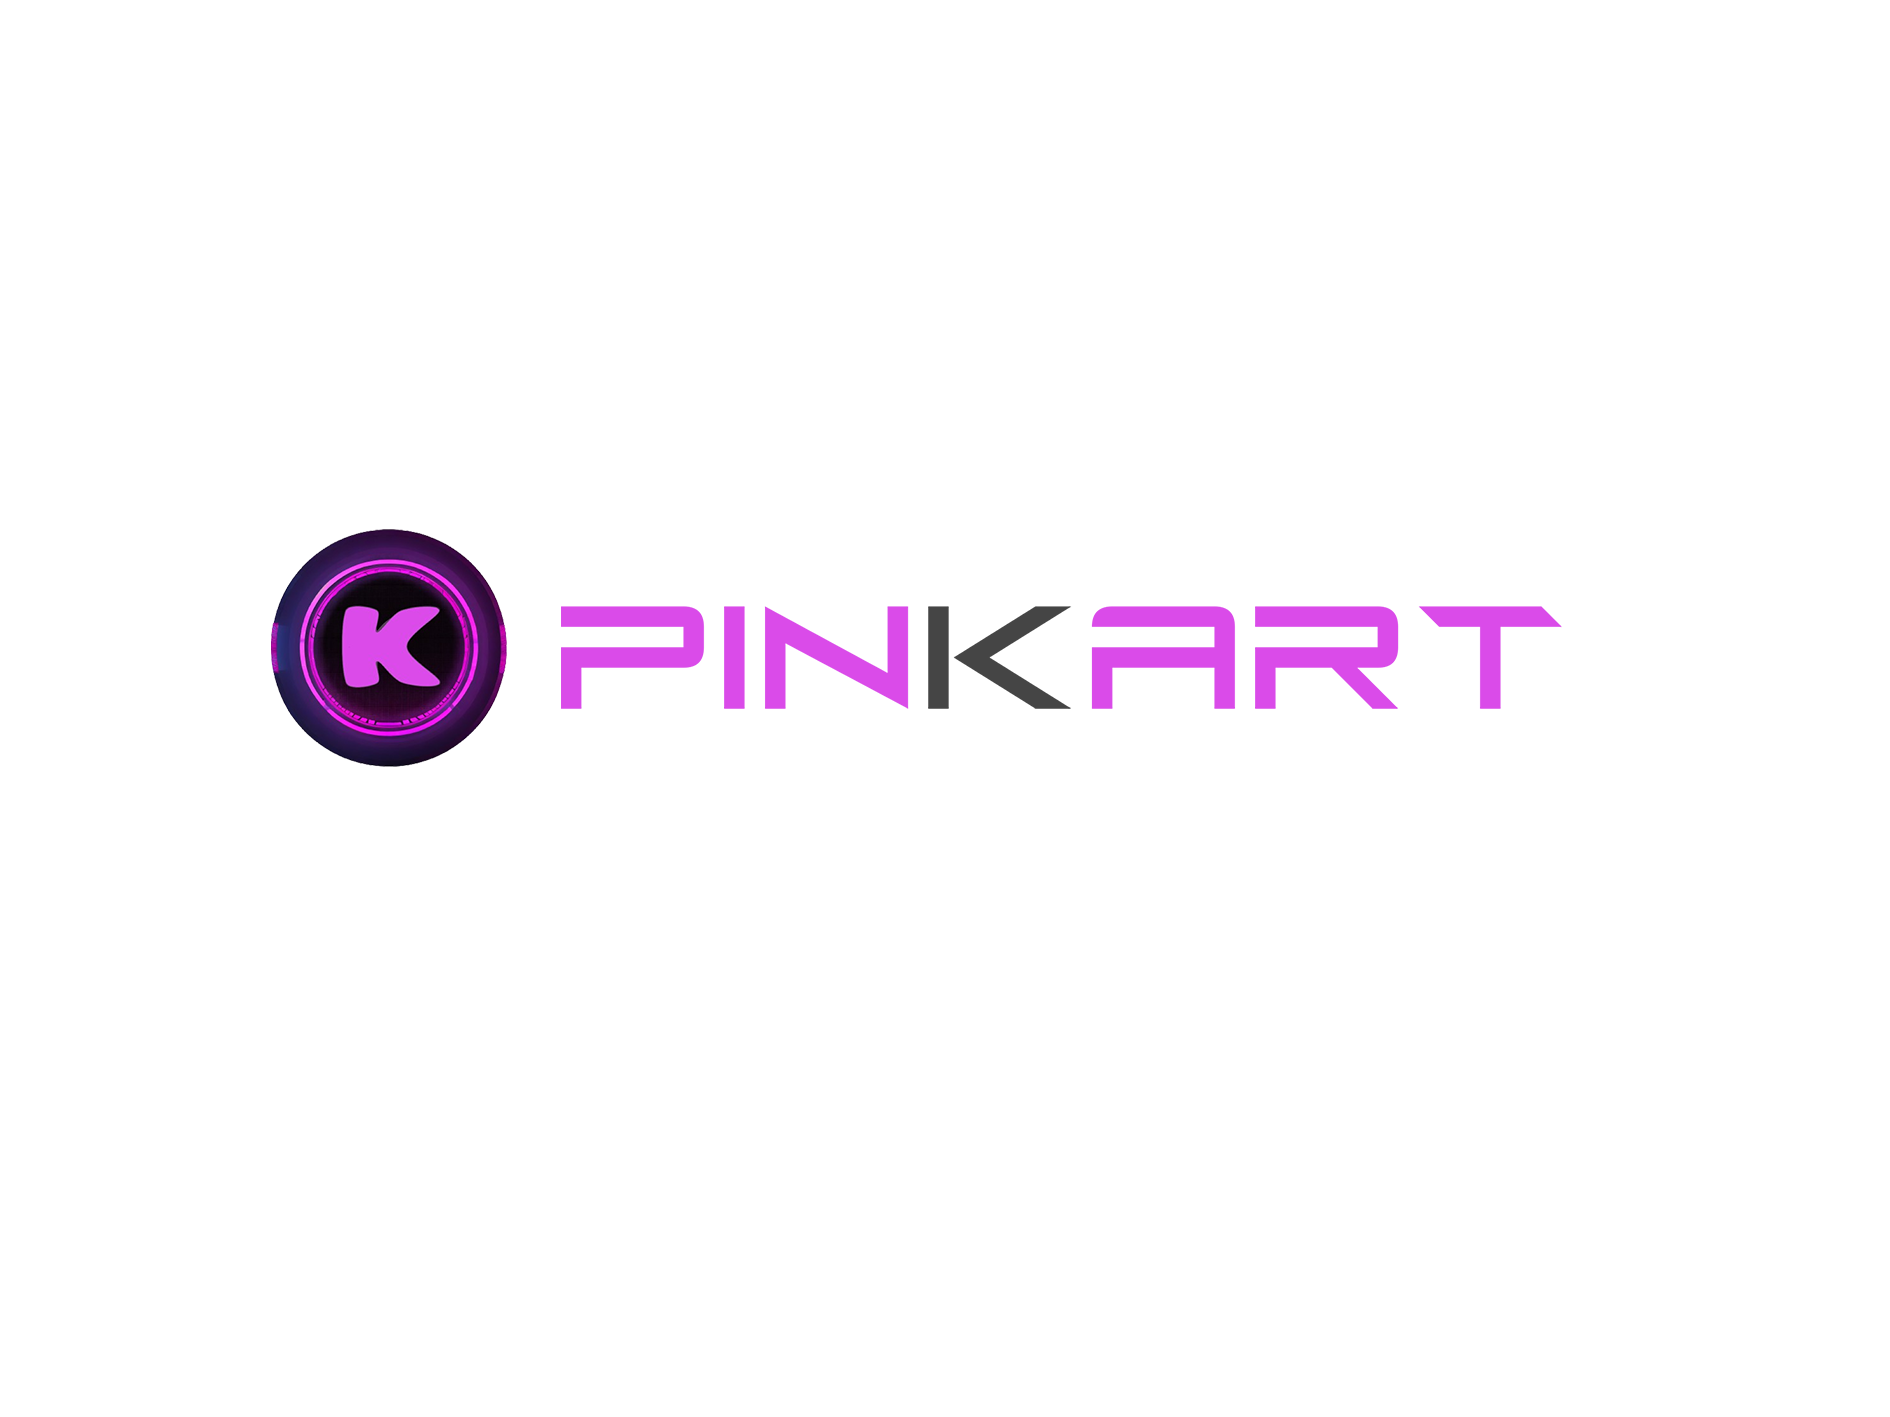 Logo Pinkart, nom pinkart plus roue.